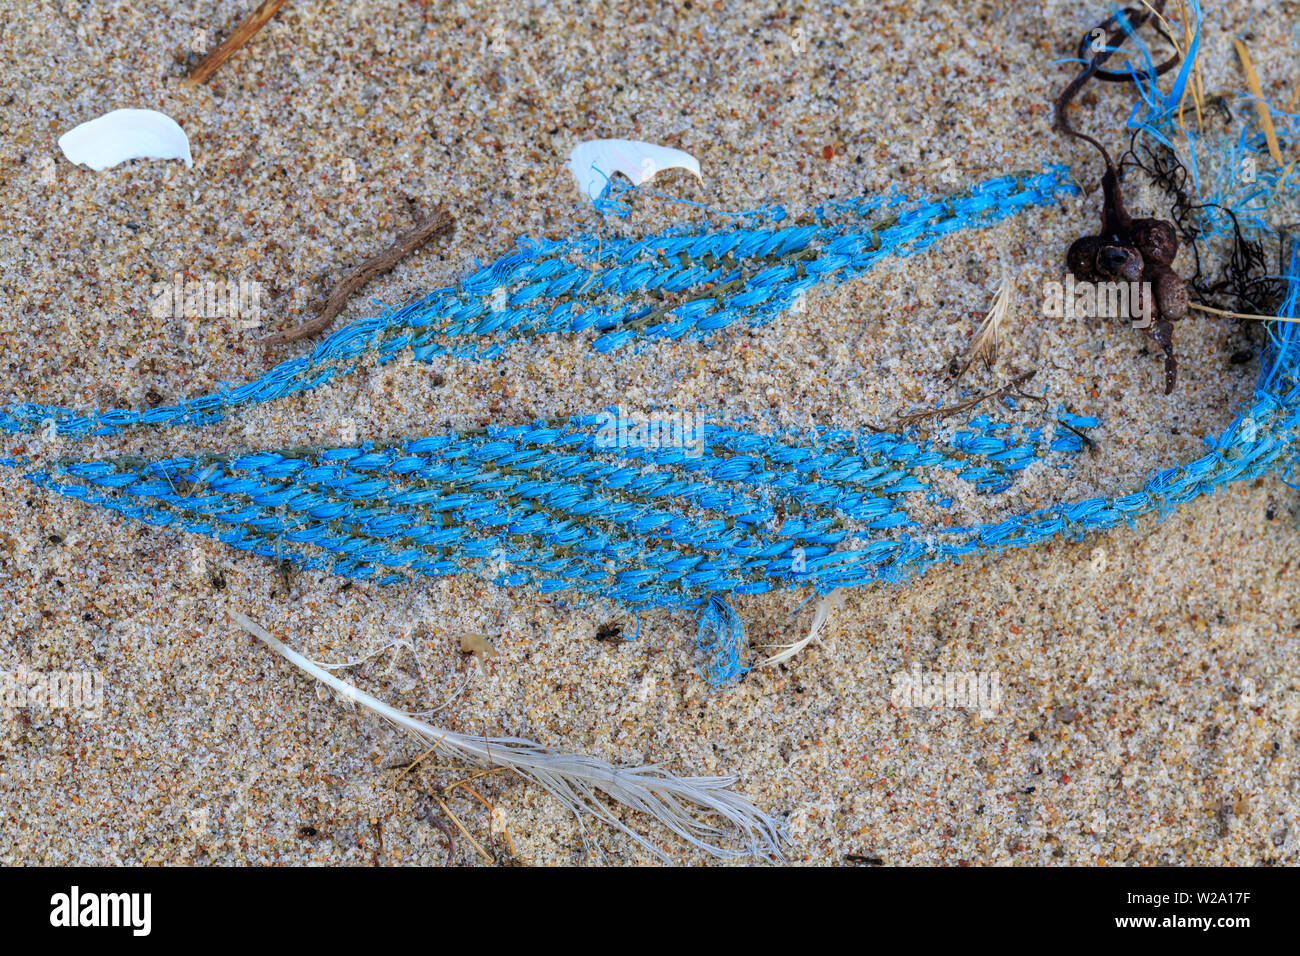 Umweltverschmutzung - einen alten blauen net Liegen am Strand Stockfoto